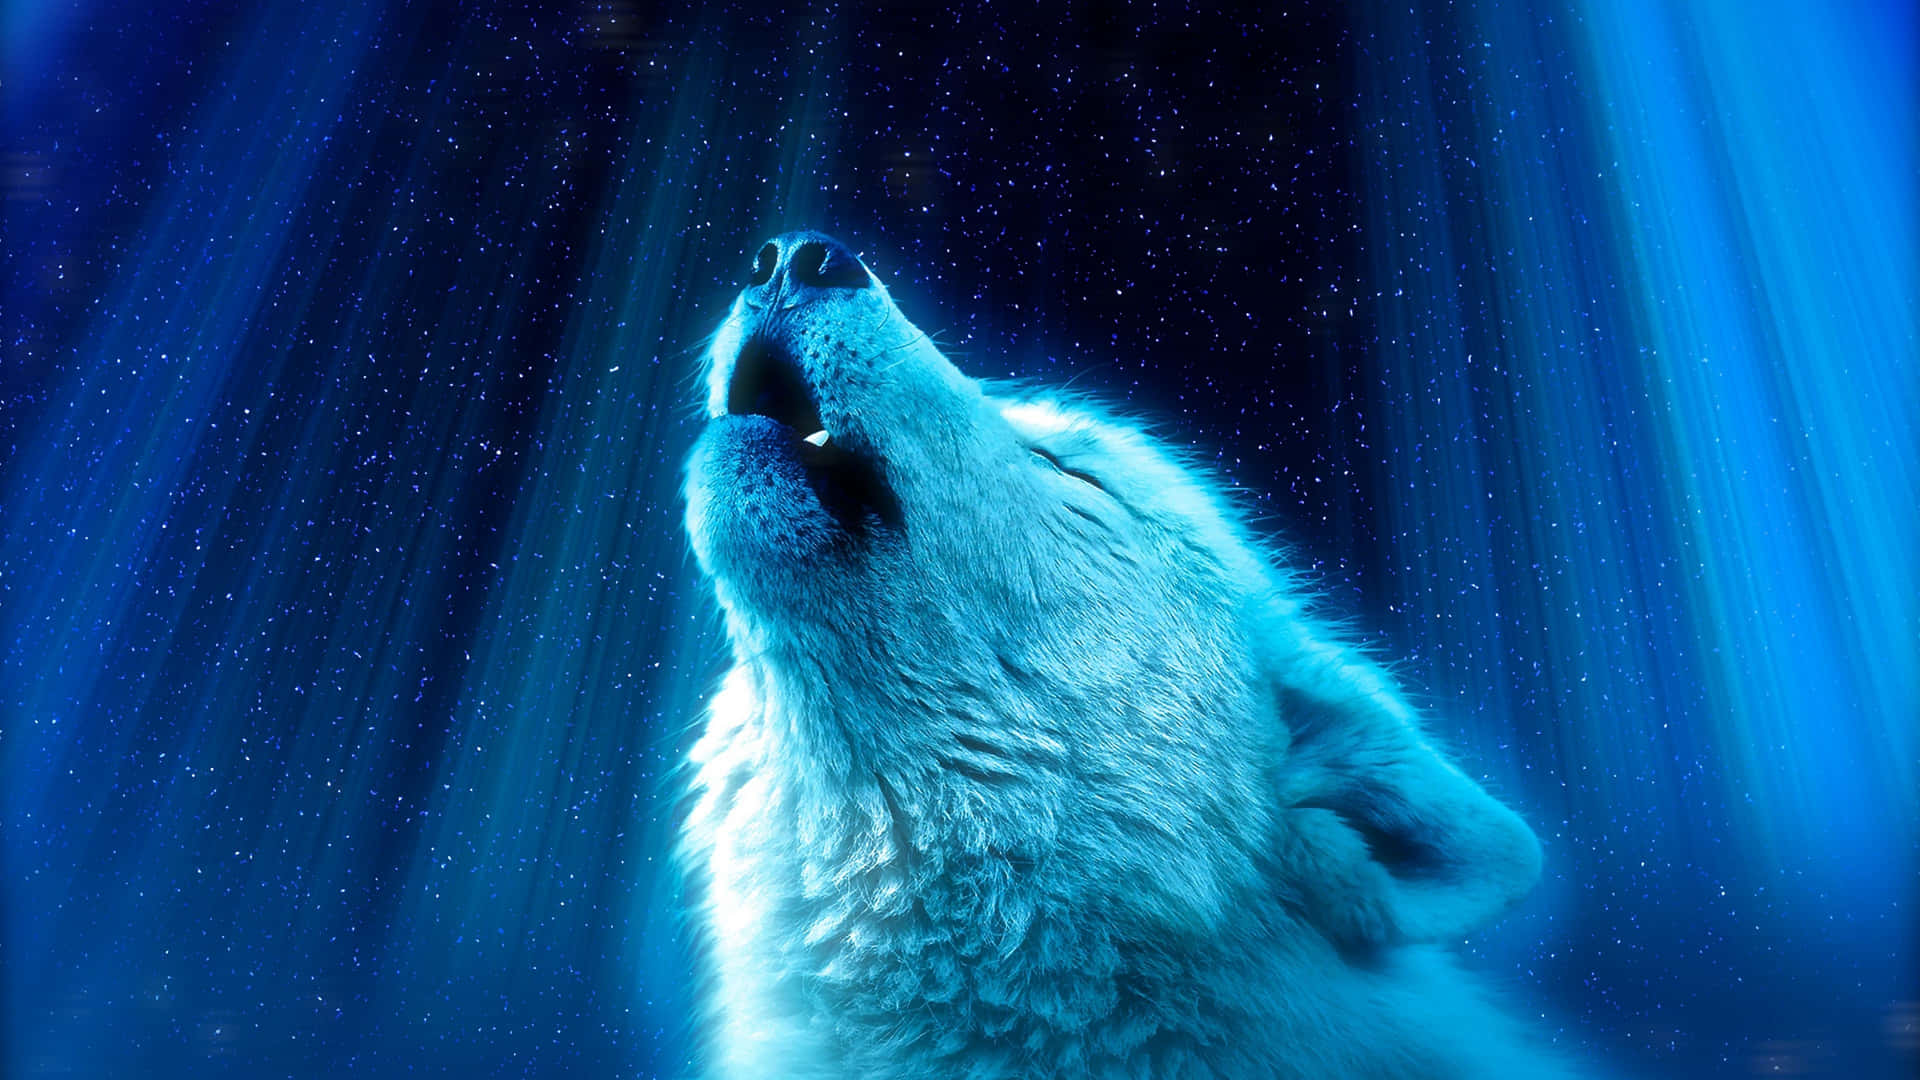 Einwilder Heulender Wolf Steht Auf Einem Berg Und Heult Herrlich Zum Nachthimmel.